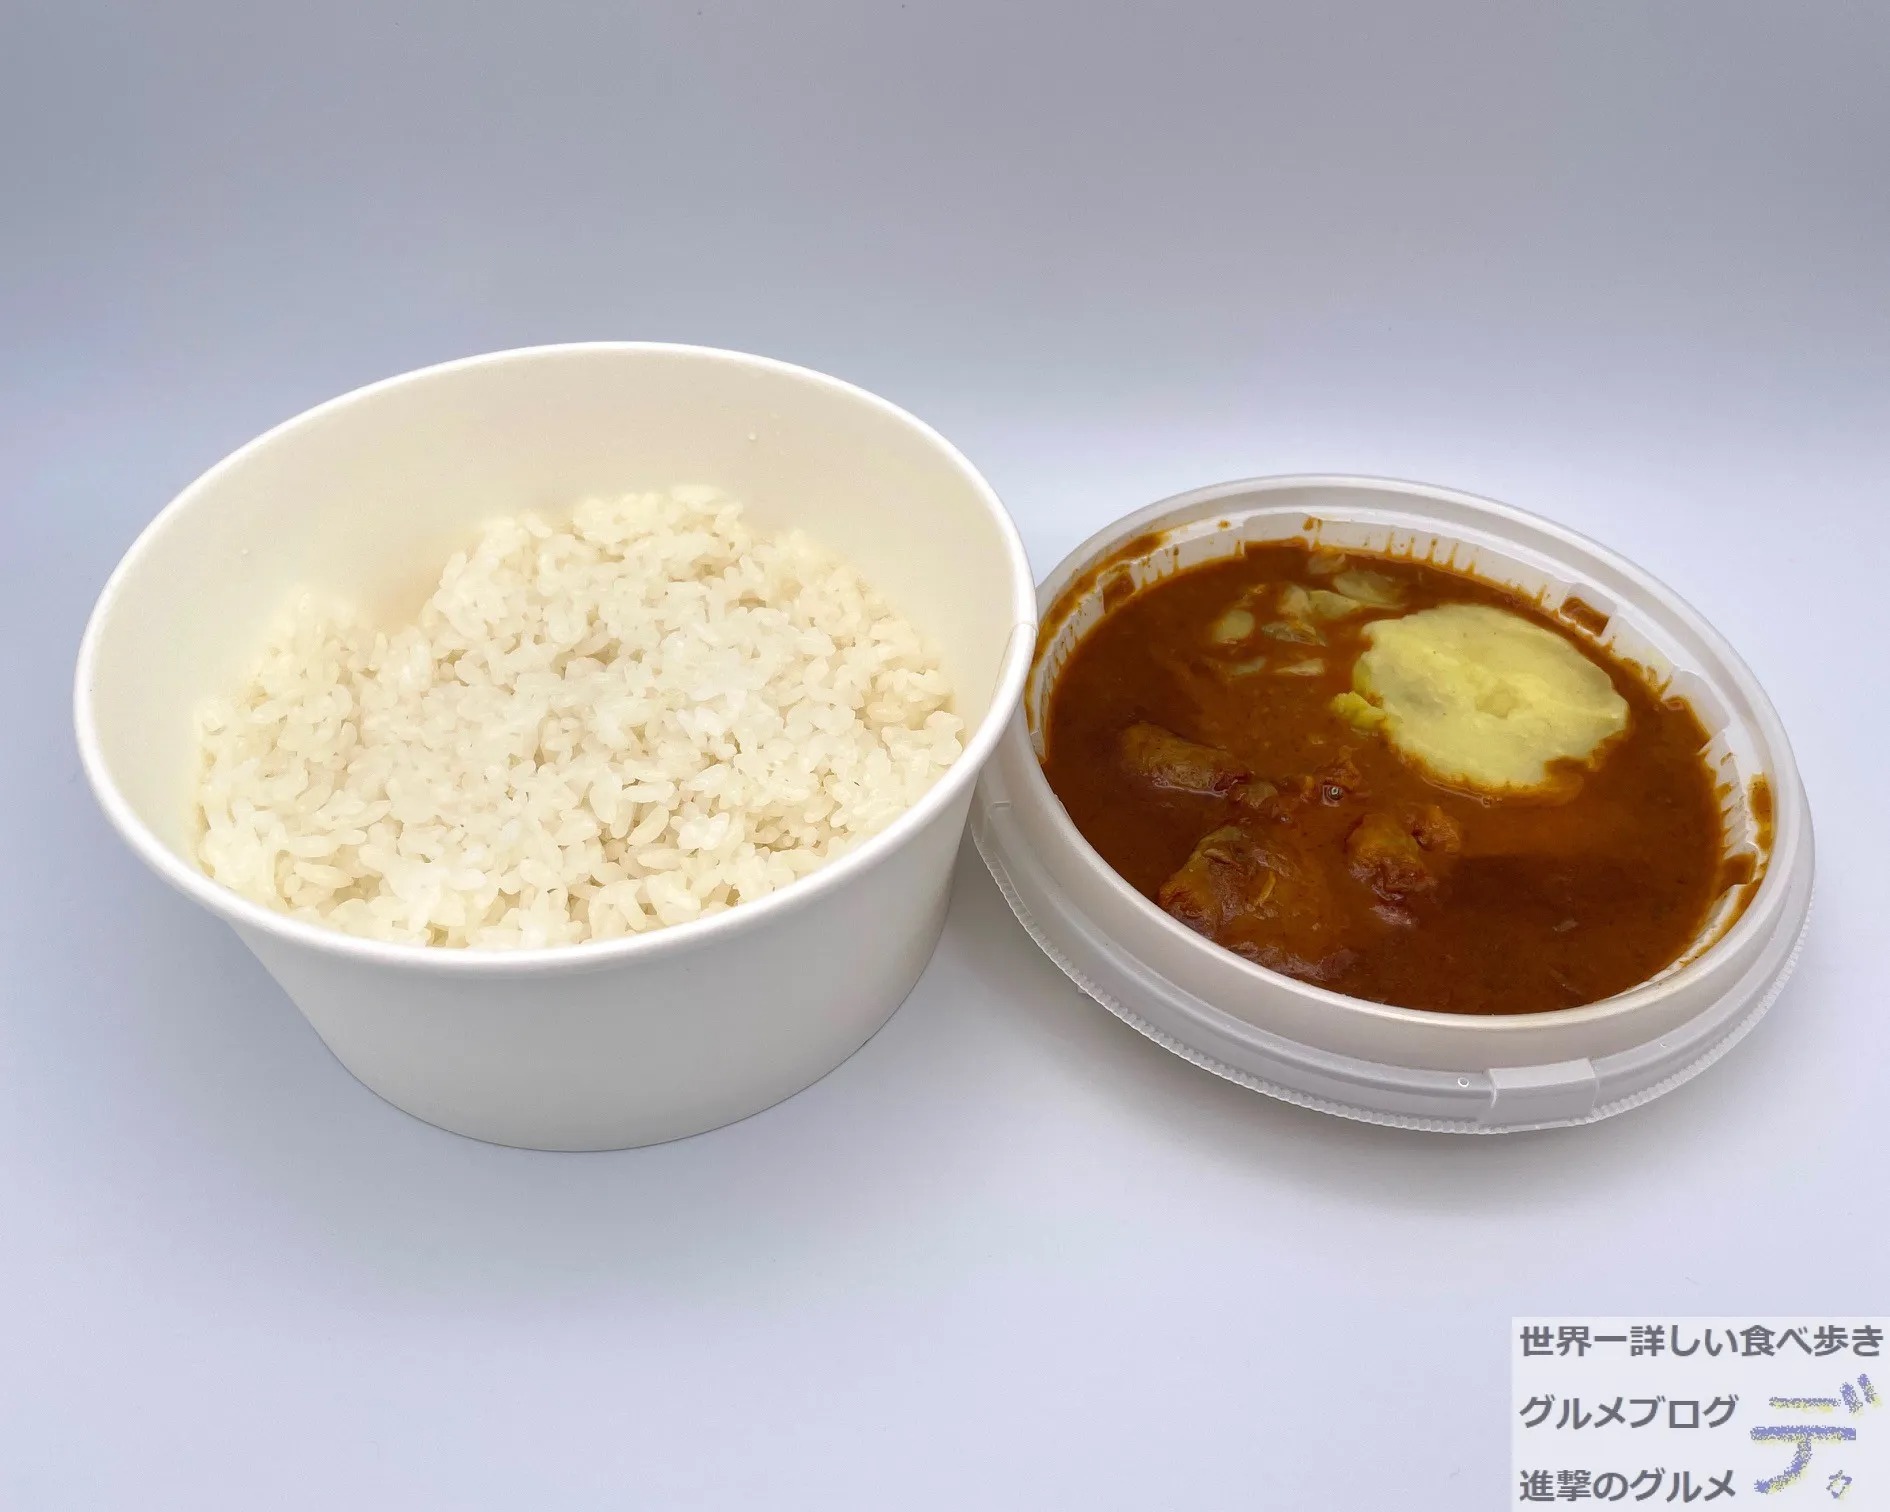 セブン新商品 ナイルレストラン監修 ナイルチキンカレー を実食レポ 進撃のグルメ Yahoo Japan クリエイターズプログラム